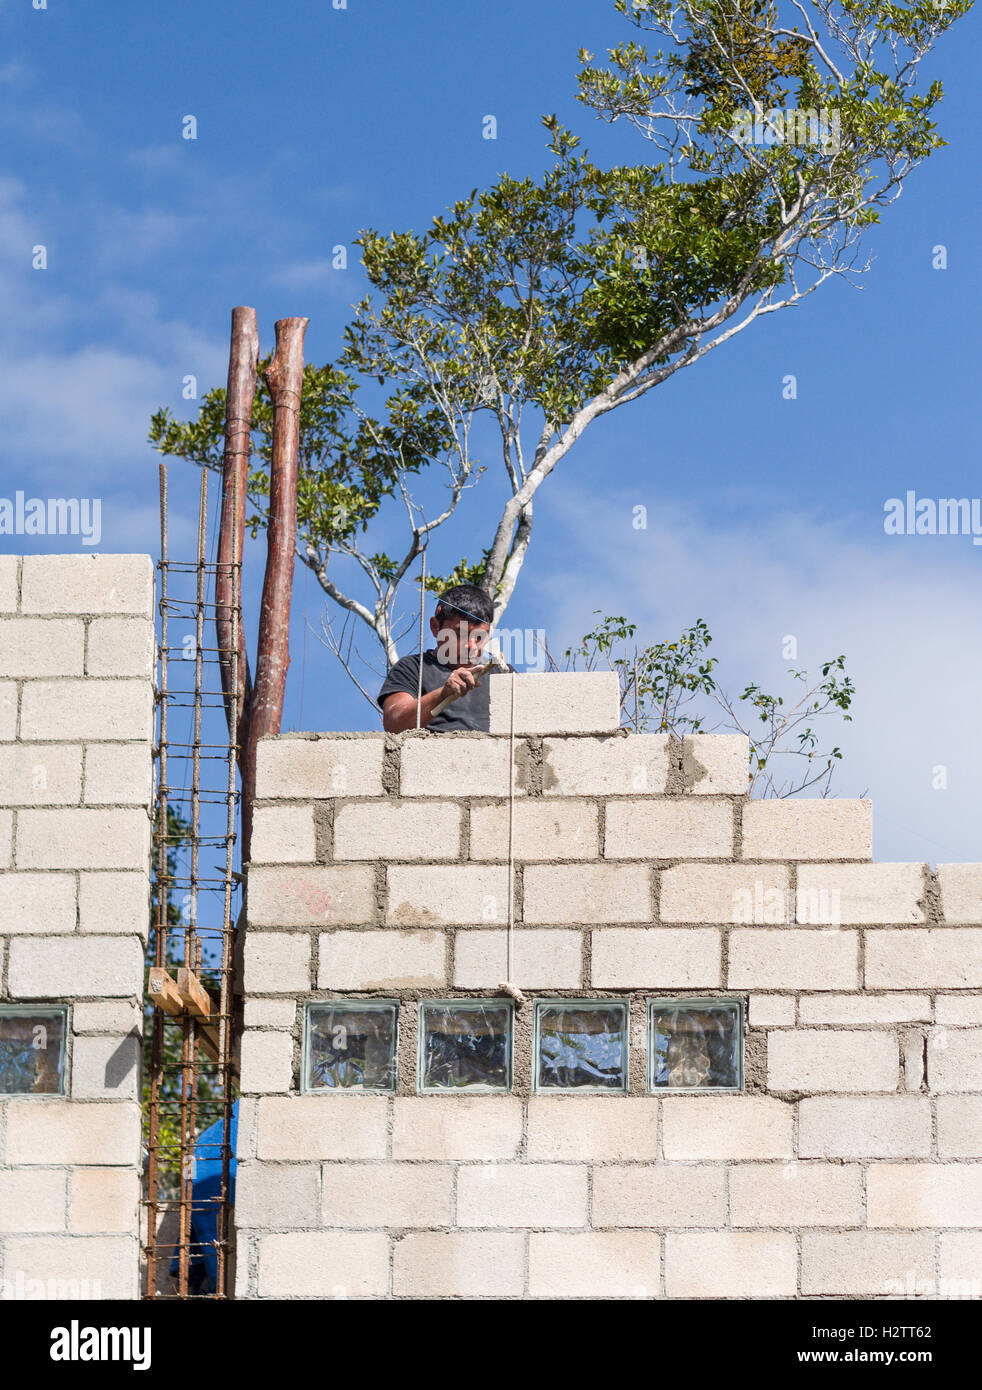 Maurerarbeiten: eine Mauer zu errichten. Maurer legt einen Betonblock hoch oben auf einer neu gebauten Betonklotz Mauer Stockfoto